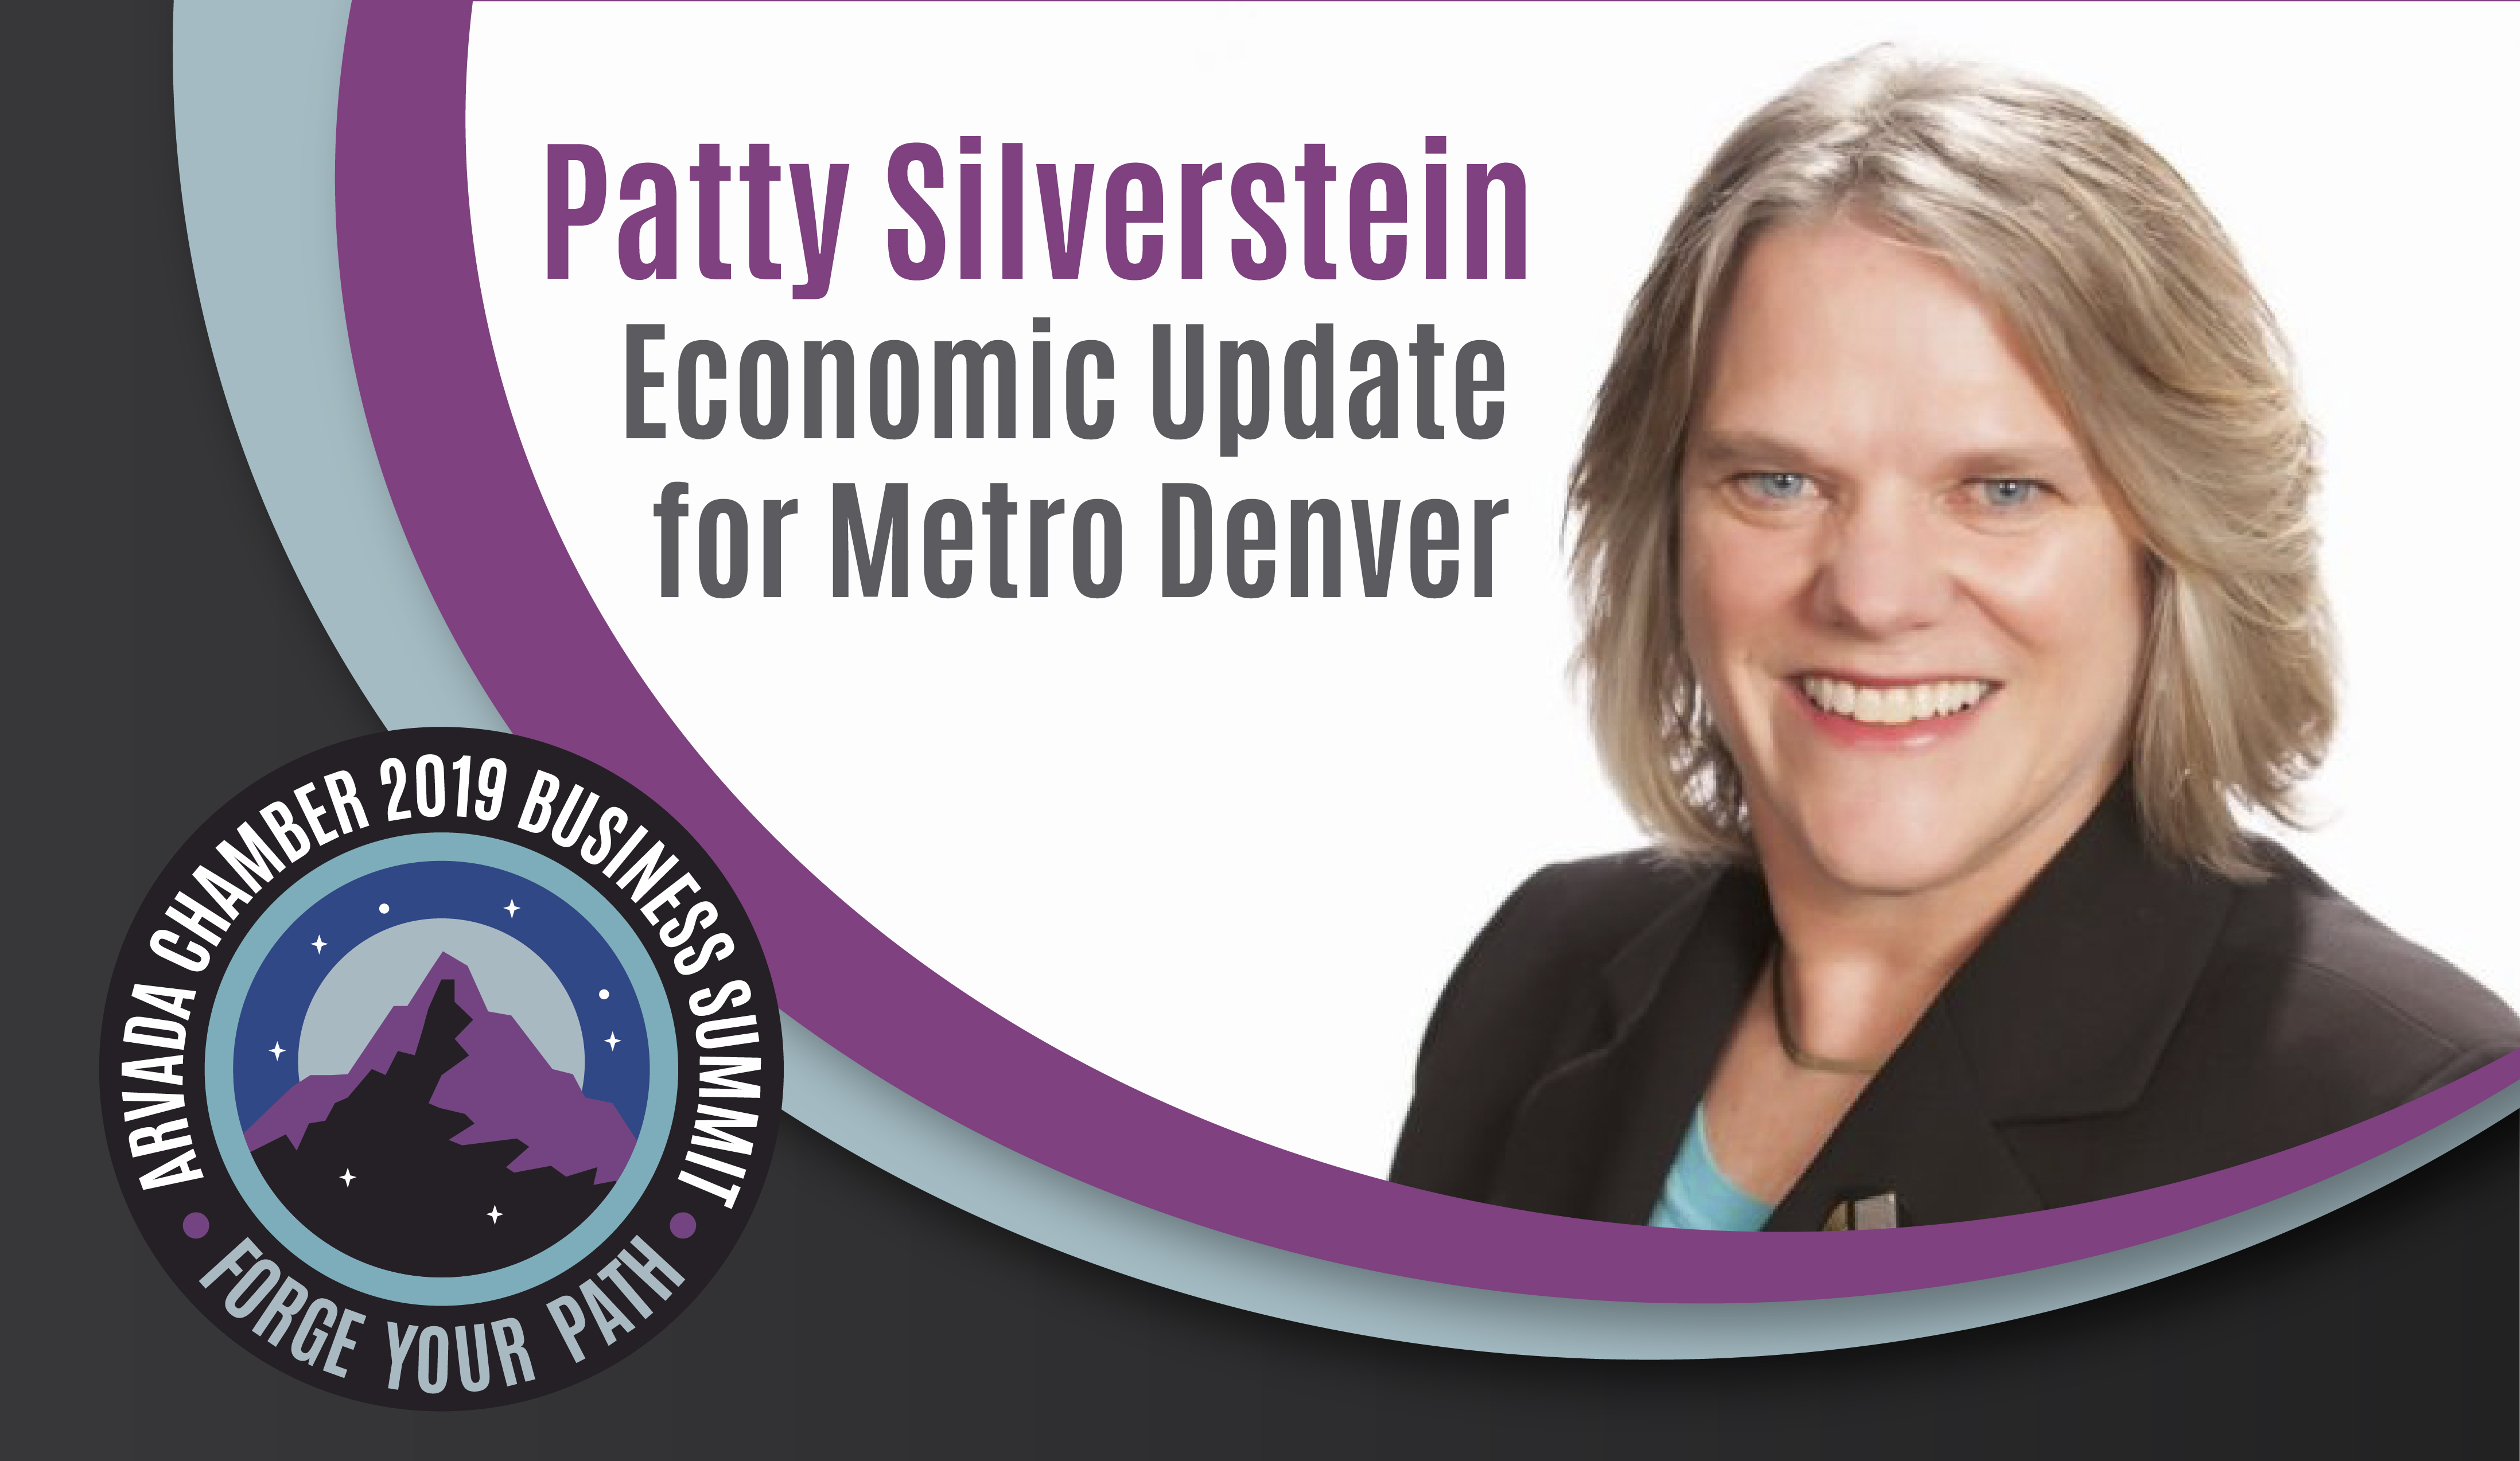 2019 Business Summit Spotlight: Patty Silverstein’s Economic Update for Metro Denver 